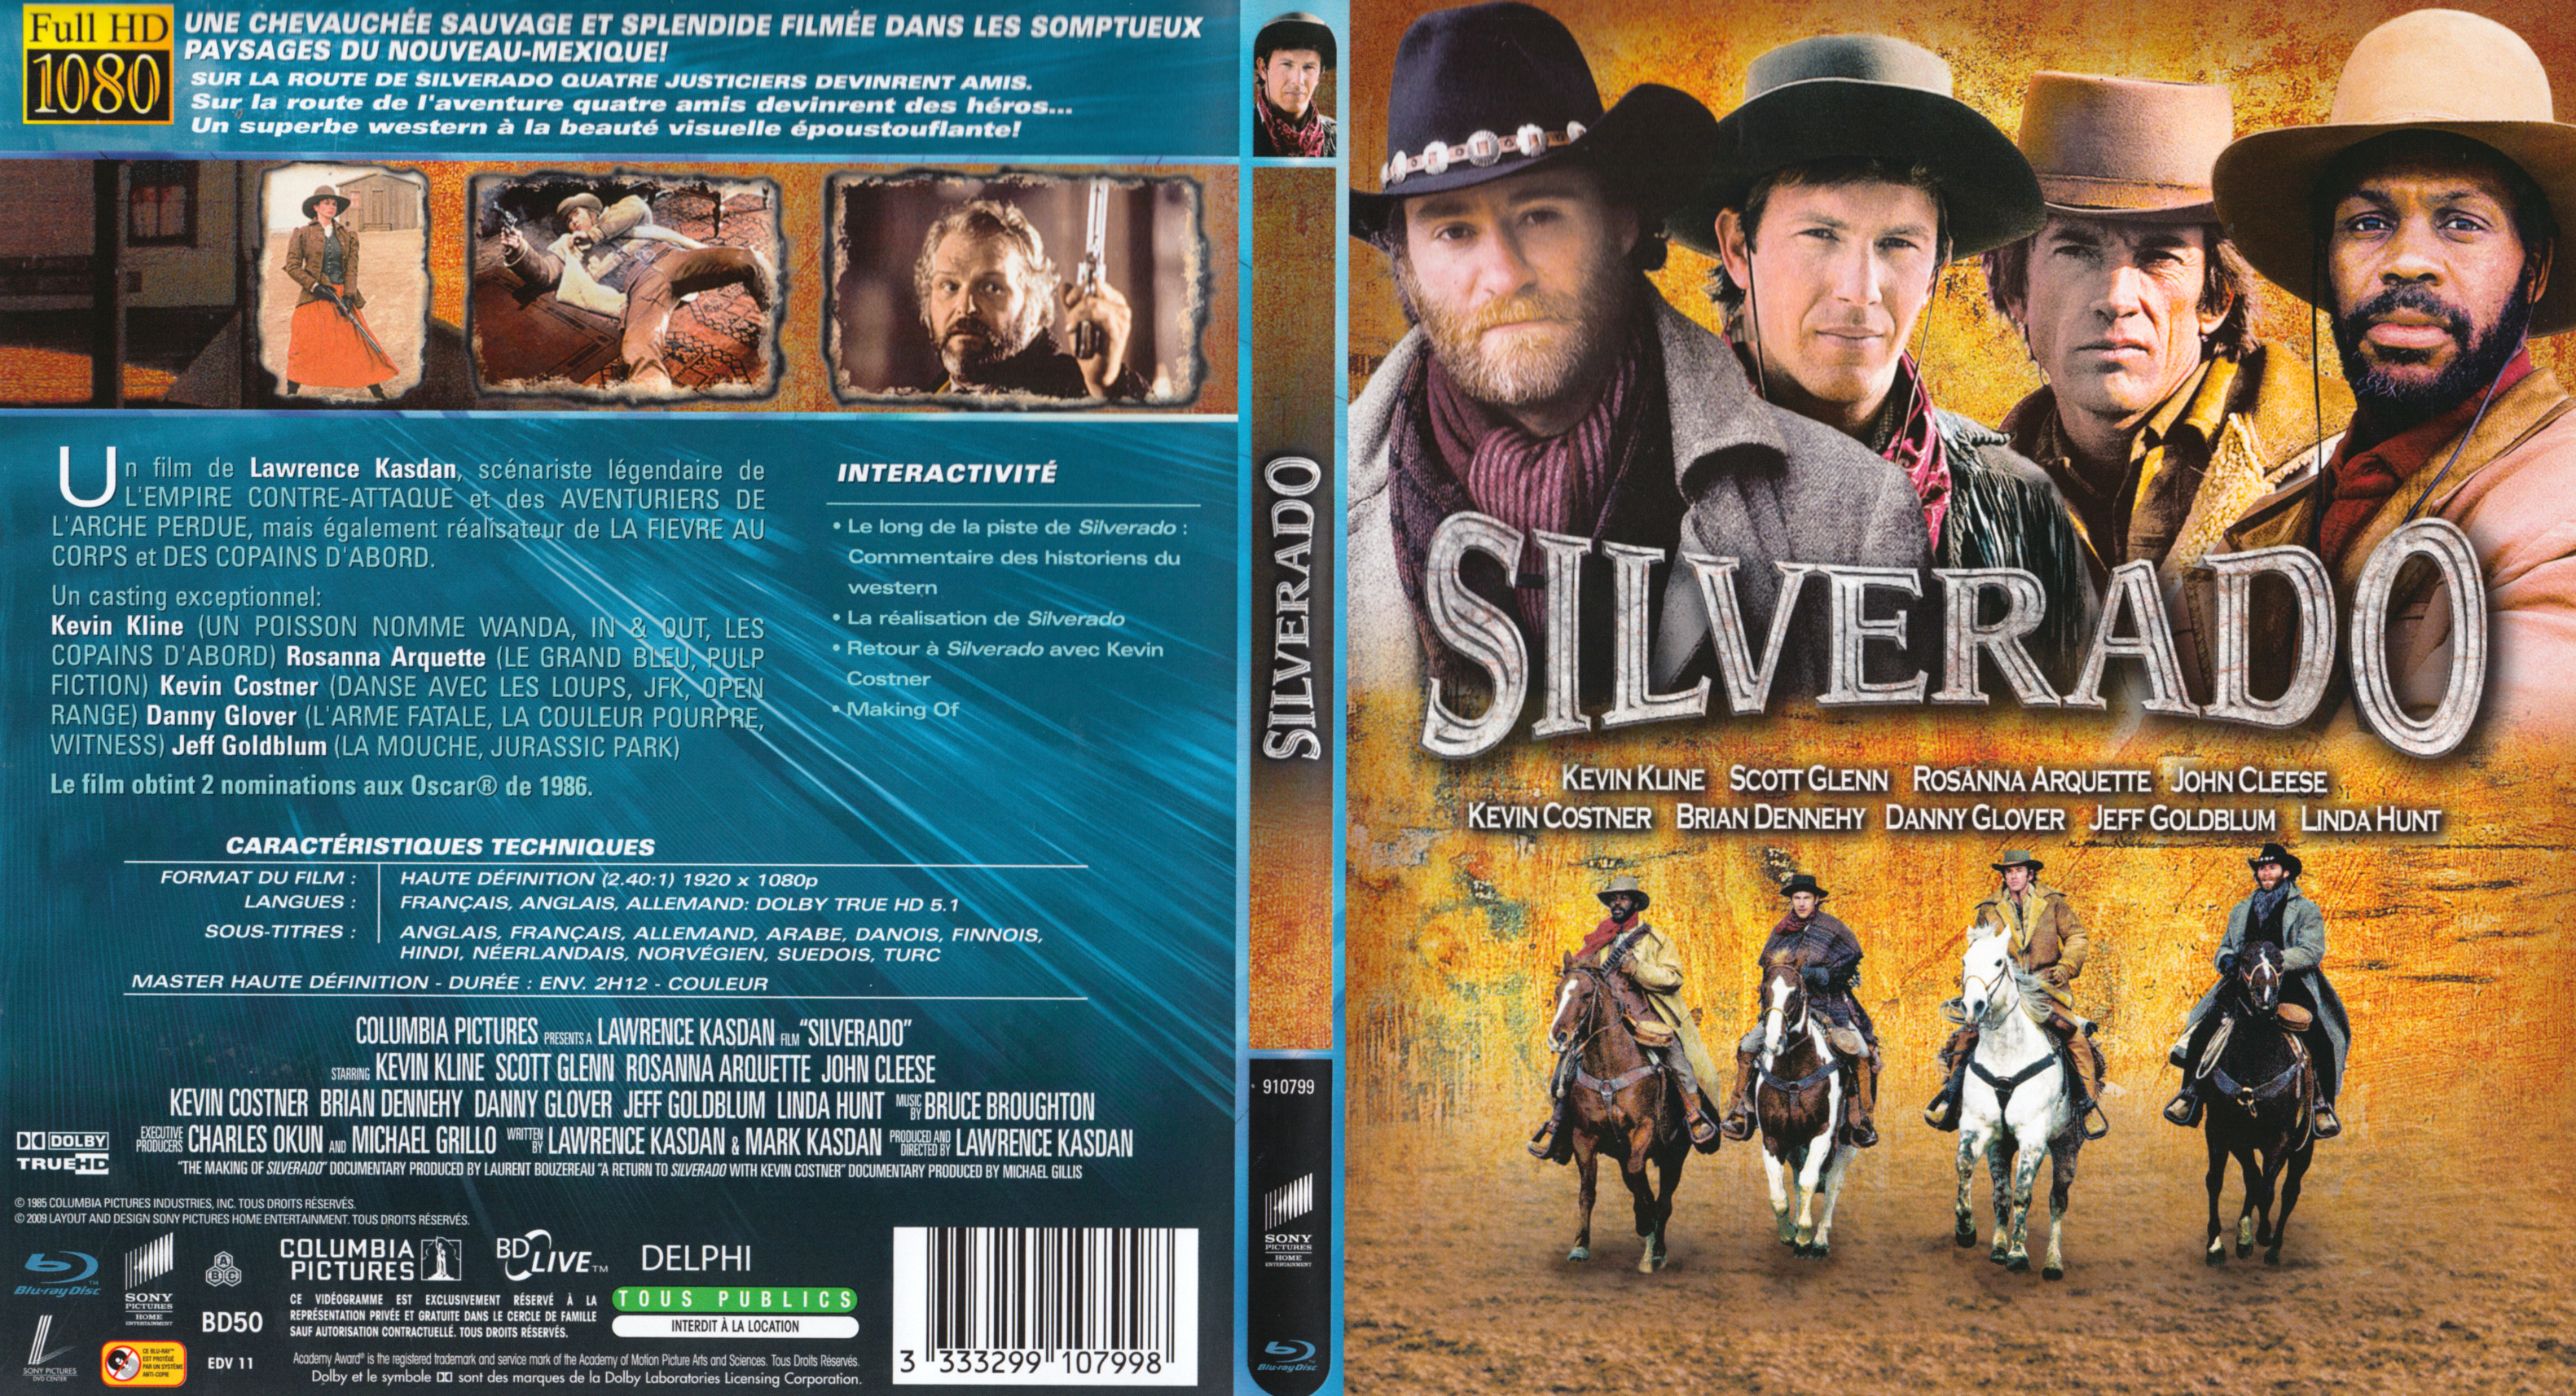 Jaquette DVD Silverado (BLU-RAY)